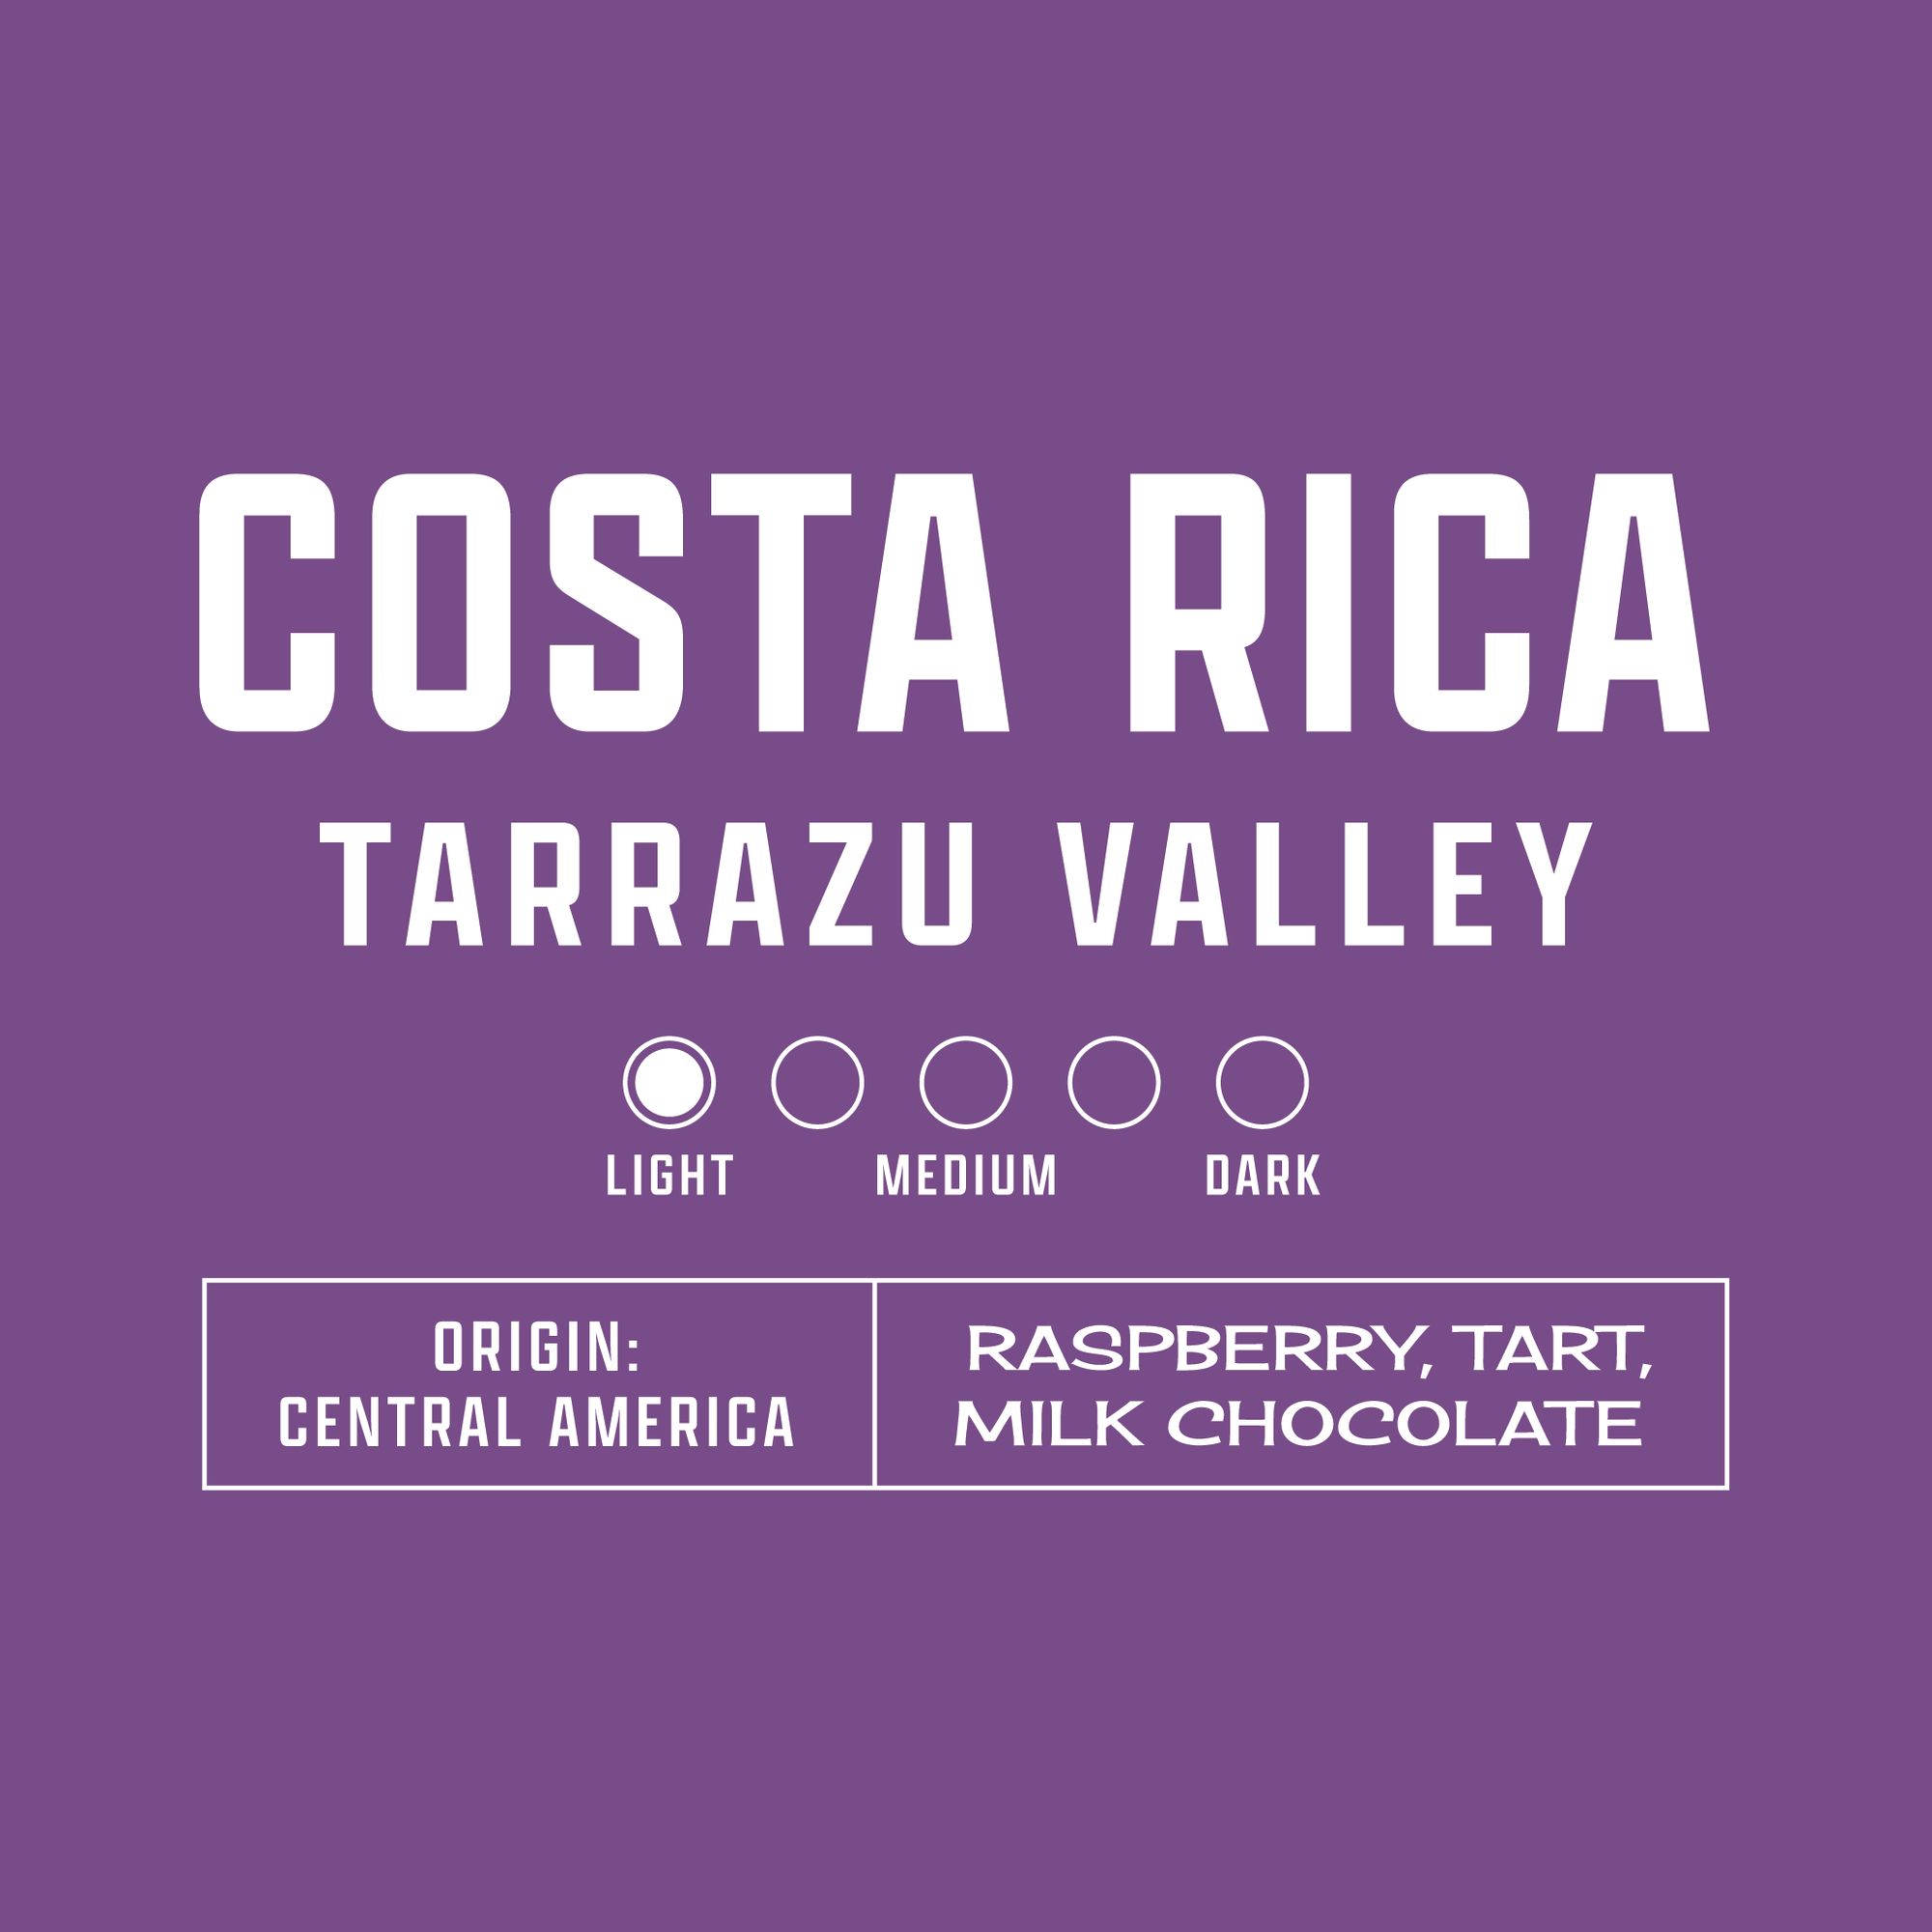 Costa Rica Tarrazu Valley